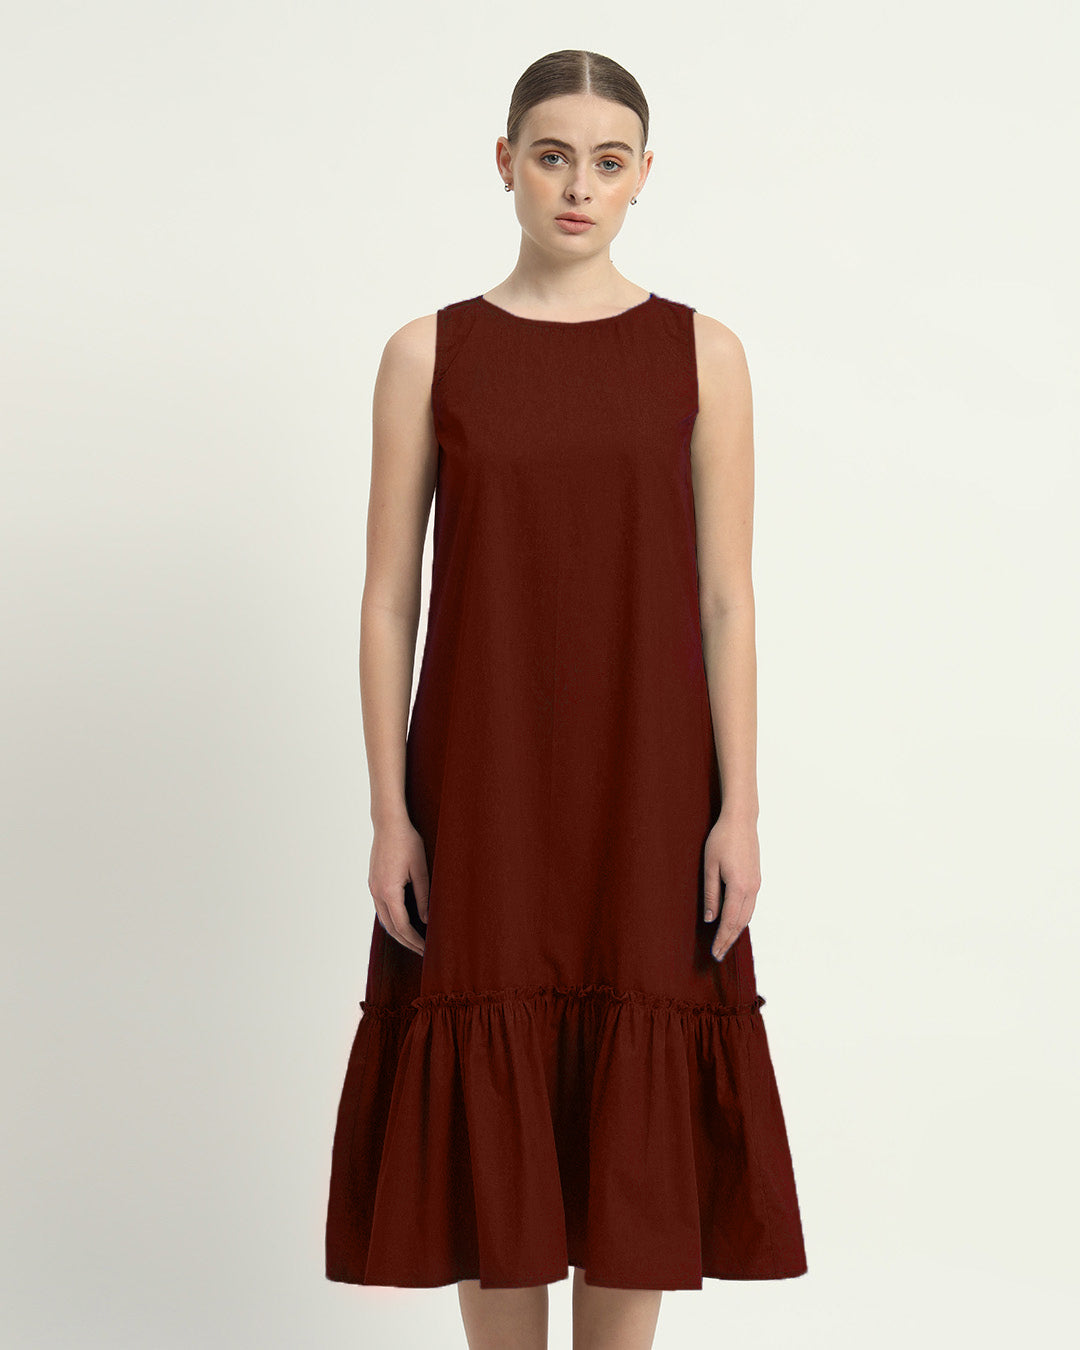 The Rouge Millis Cotton Dress